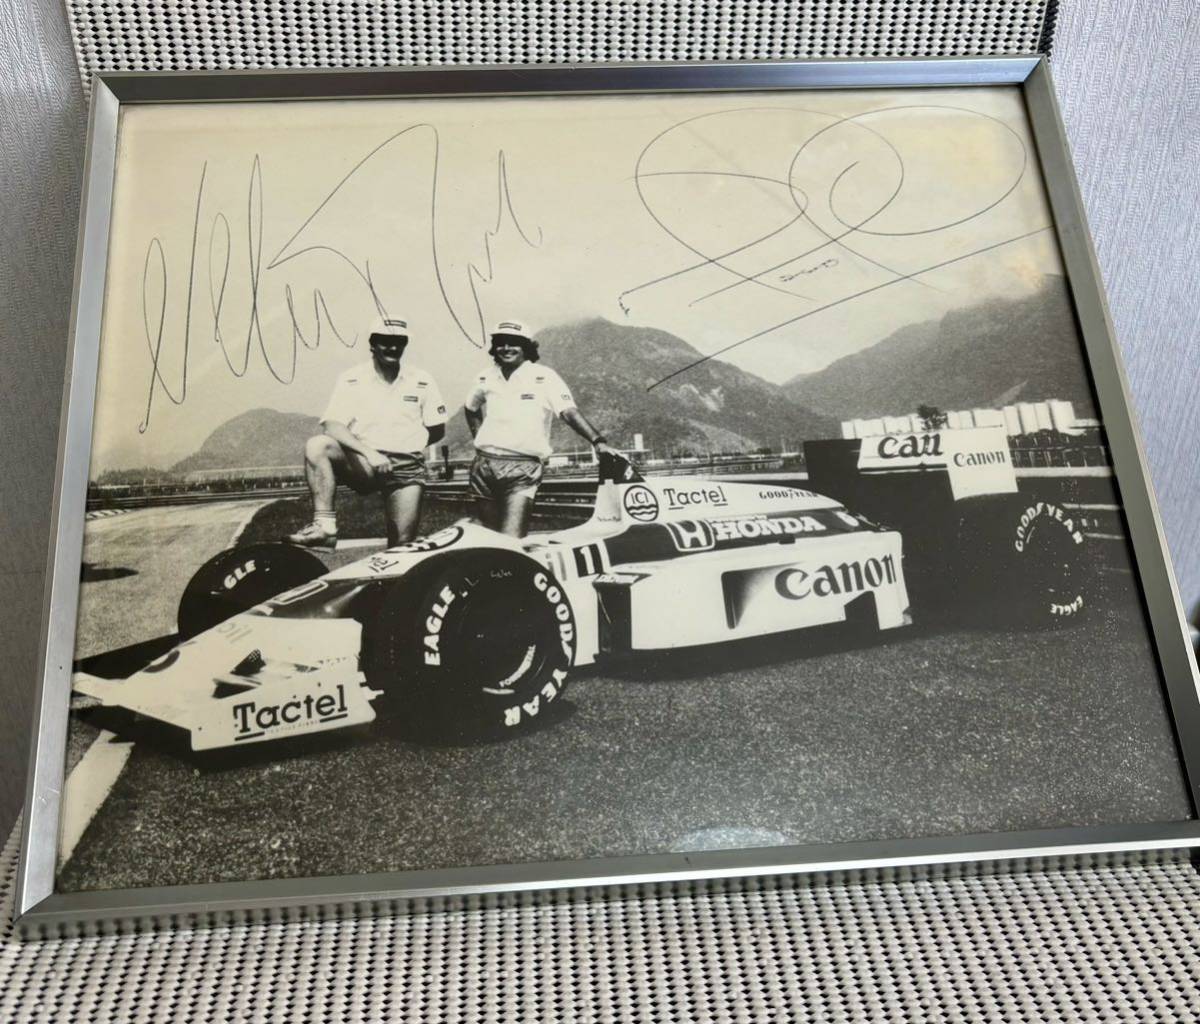 صورة وملصق F1 Williams Honda FW11 Mansell Piquet Honda الترويجي من ذلك الوقت ليس للبيع, بواسطة الرياضة, سباق السيارات, F1